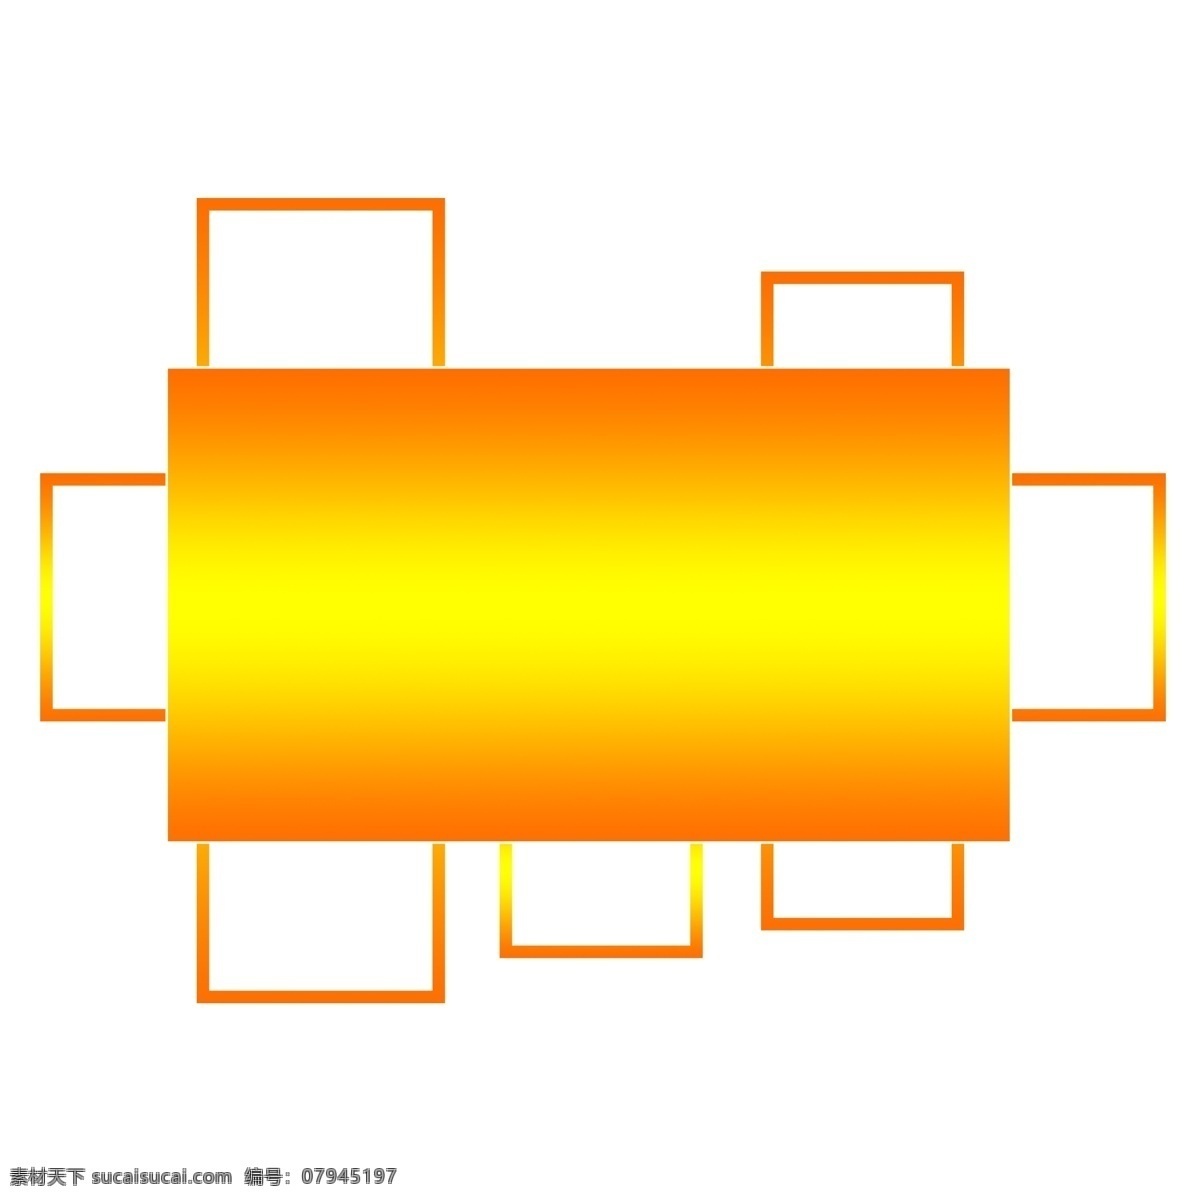 纹理 渐变 橙黄色 长方形 卡通 装饰 边框 商用 纹理边框 可商用